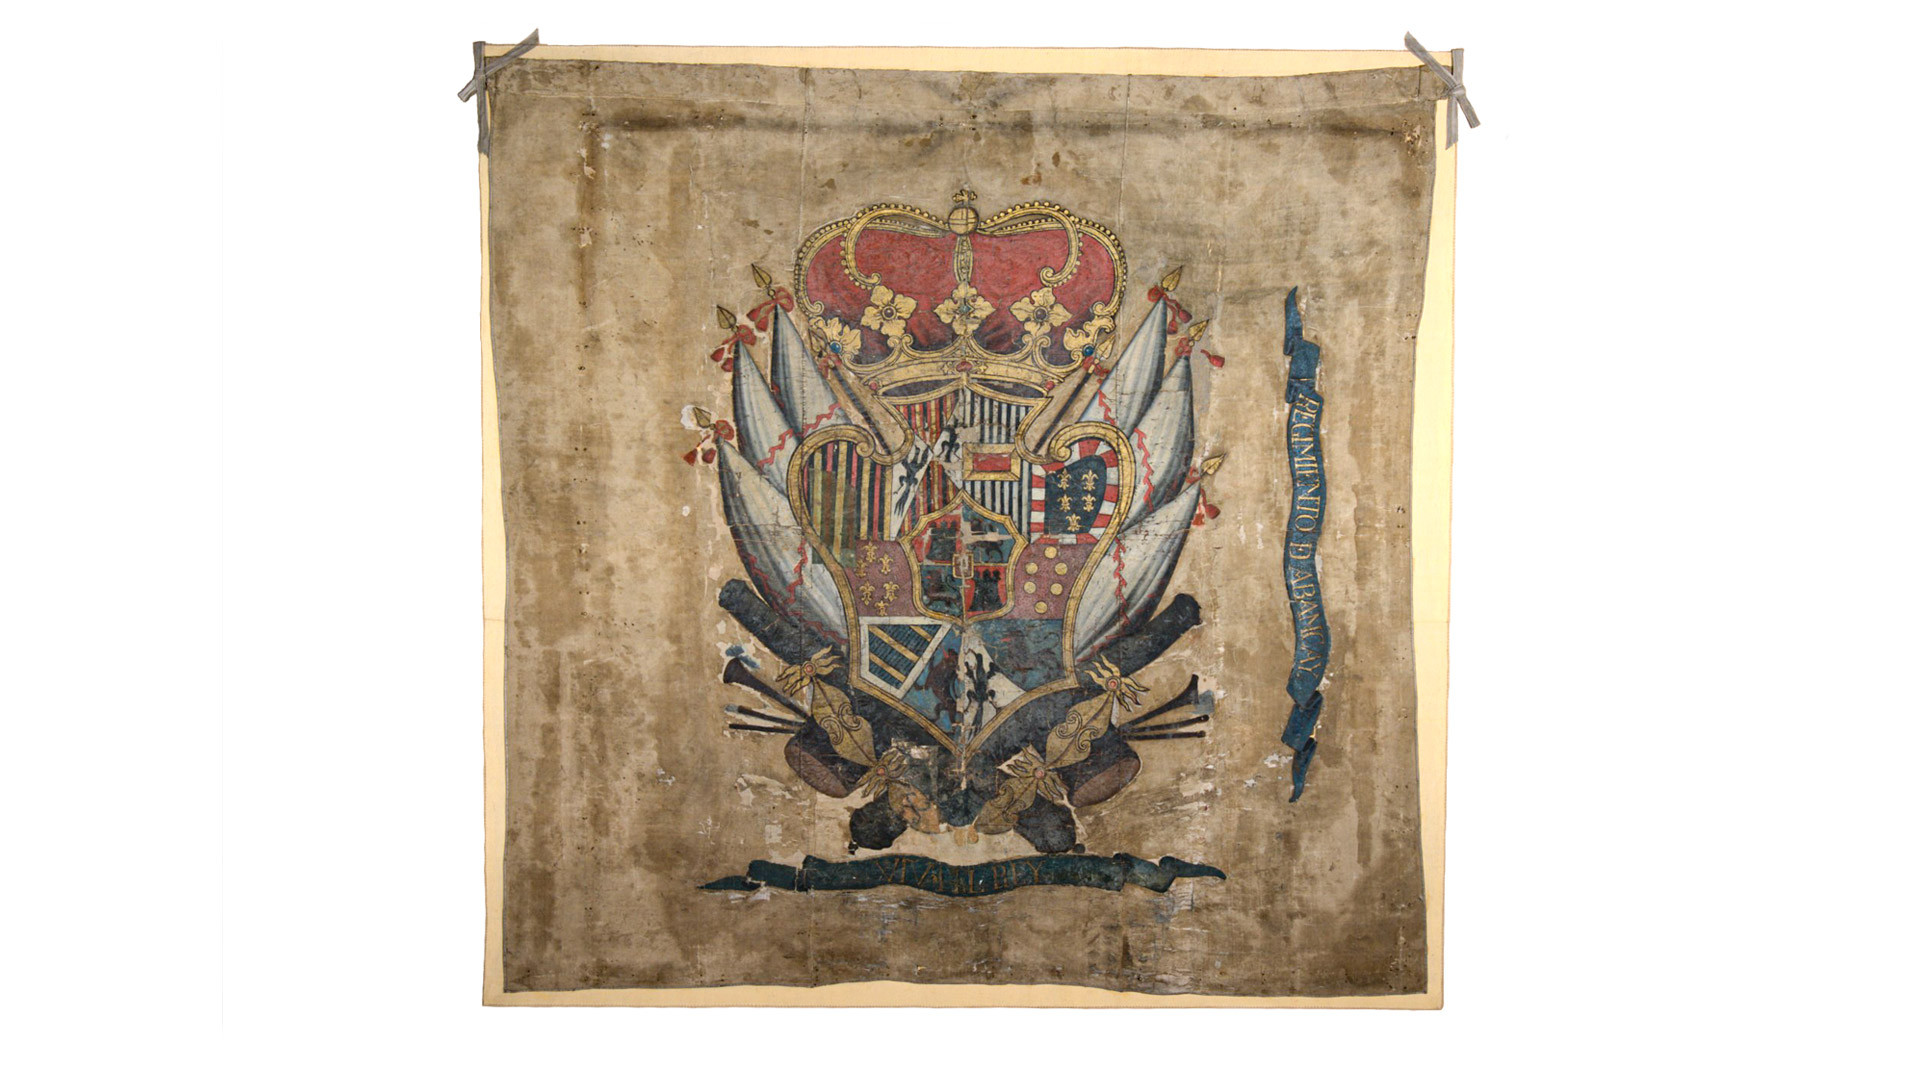 Bandera de seda blanca con un escudo pintado al óleo en el centro. Se trata del escudo real de España coronado. En la base sobre una cinta se lee la frase “Viva el Rey” y en un costado en otra cinta se lee “Regimiento Abancay”.